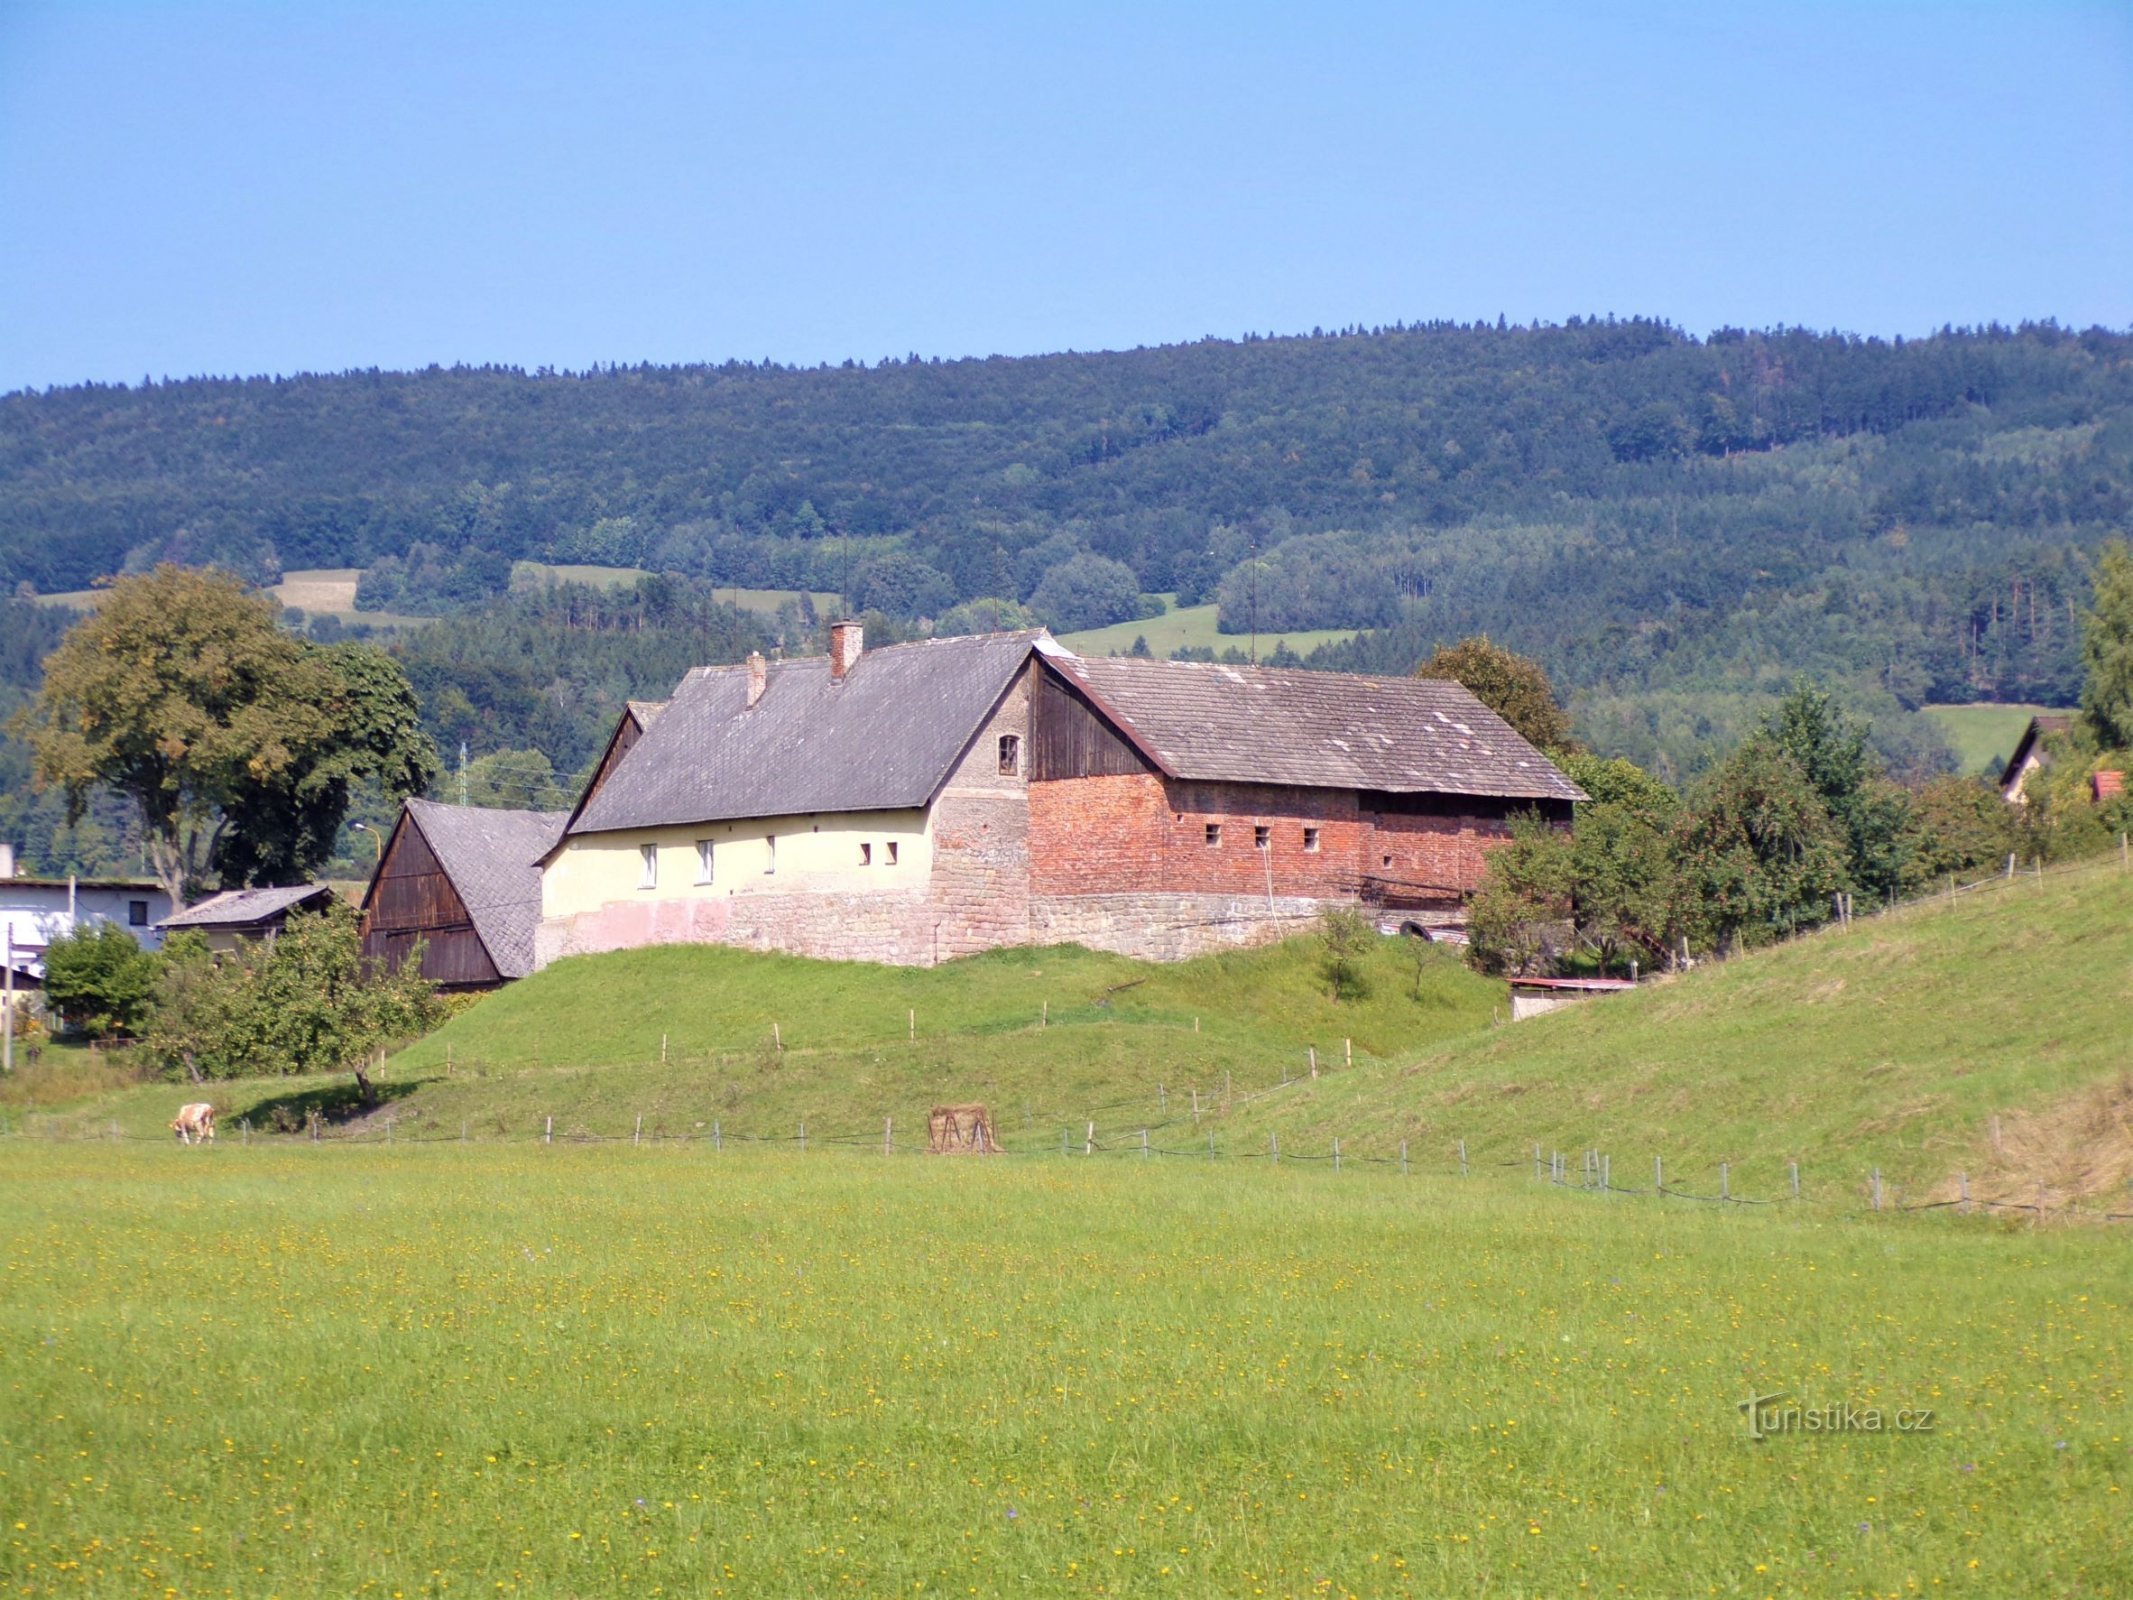 Gods nr 242 på platsen för en före detta fästning (Velké Svatoňovice, 6.9.2021/XNUMX/XNUMX)